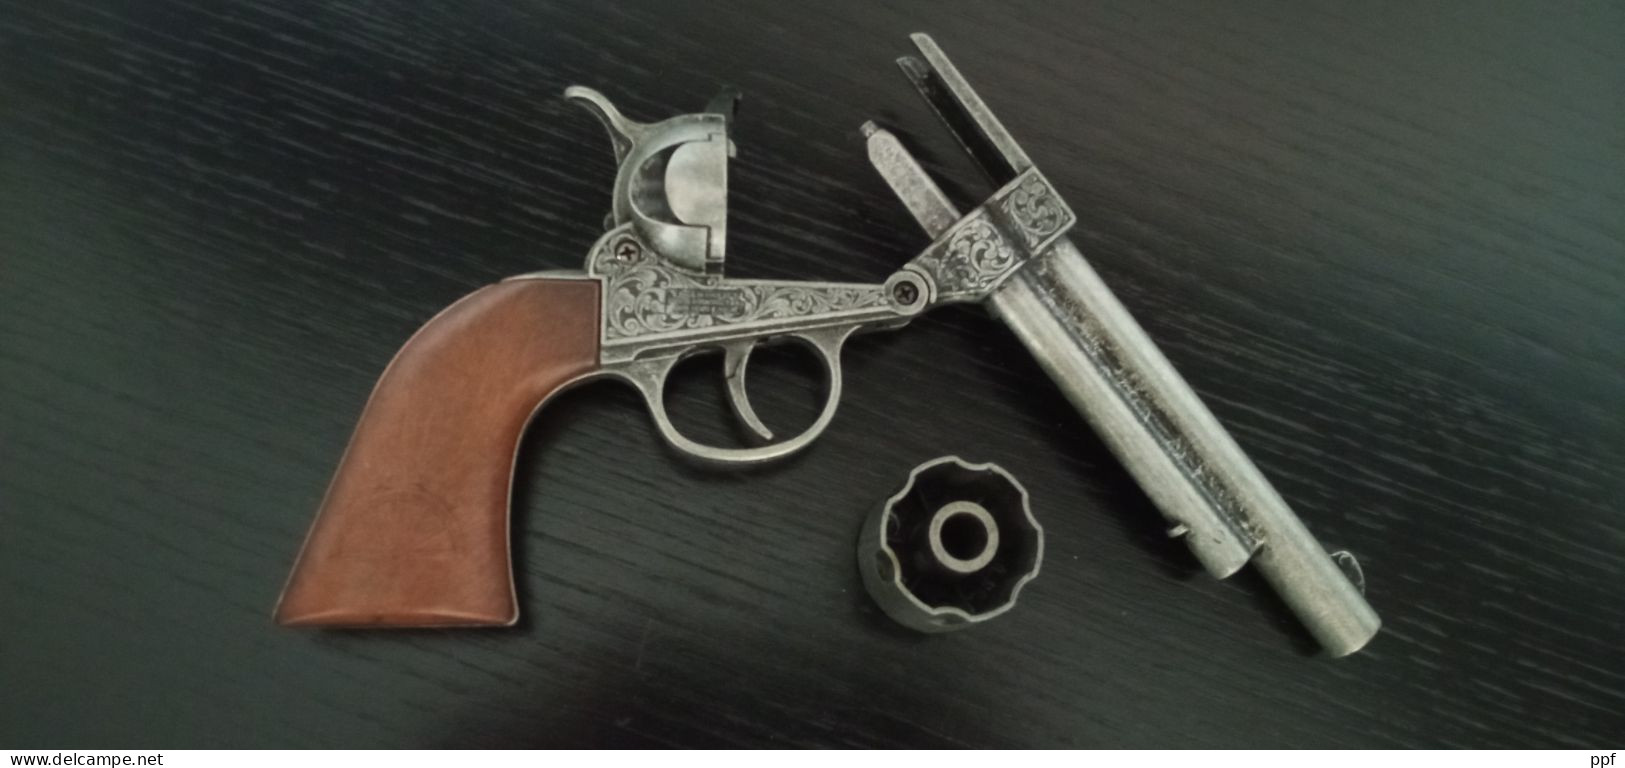 Edison giocattoli, Coppia di Colt in metallo anni 70 Made in Italy Sesto Fiorentino (FI), perfettamente funzionanti.